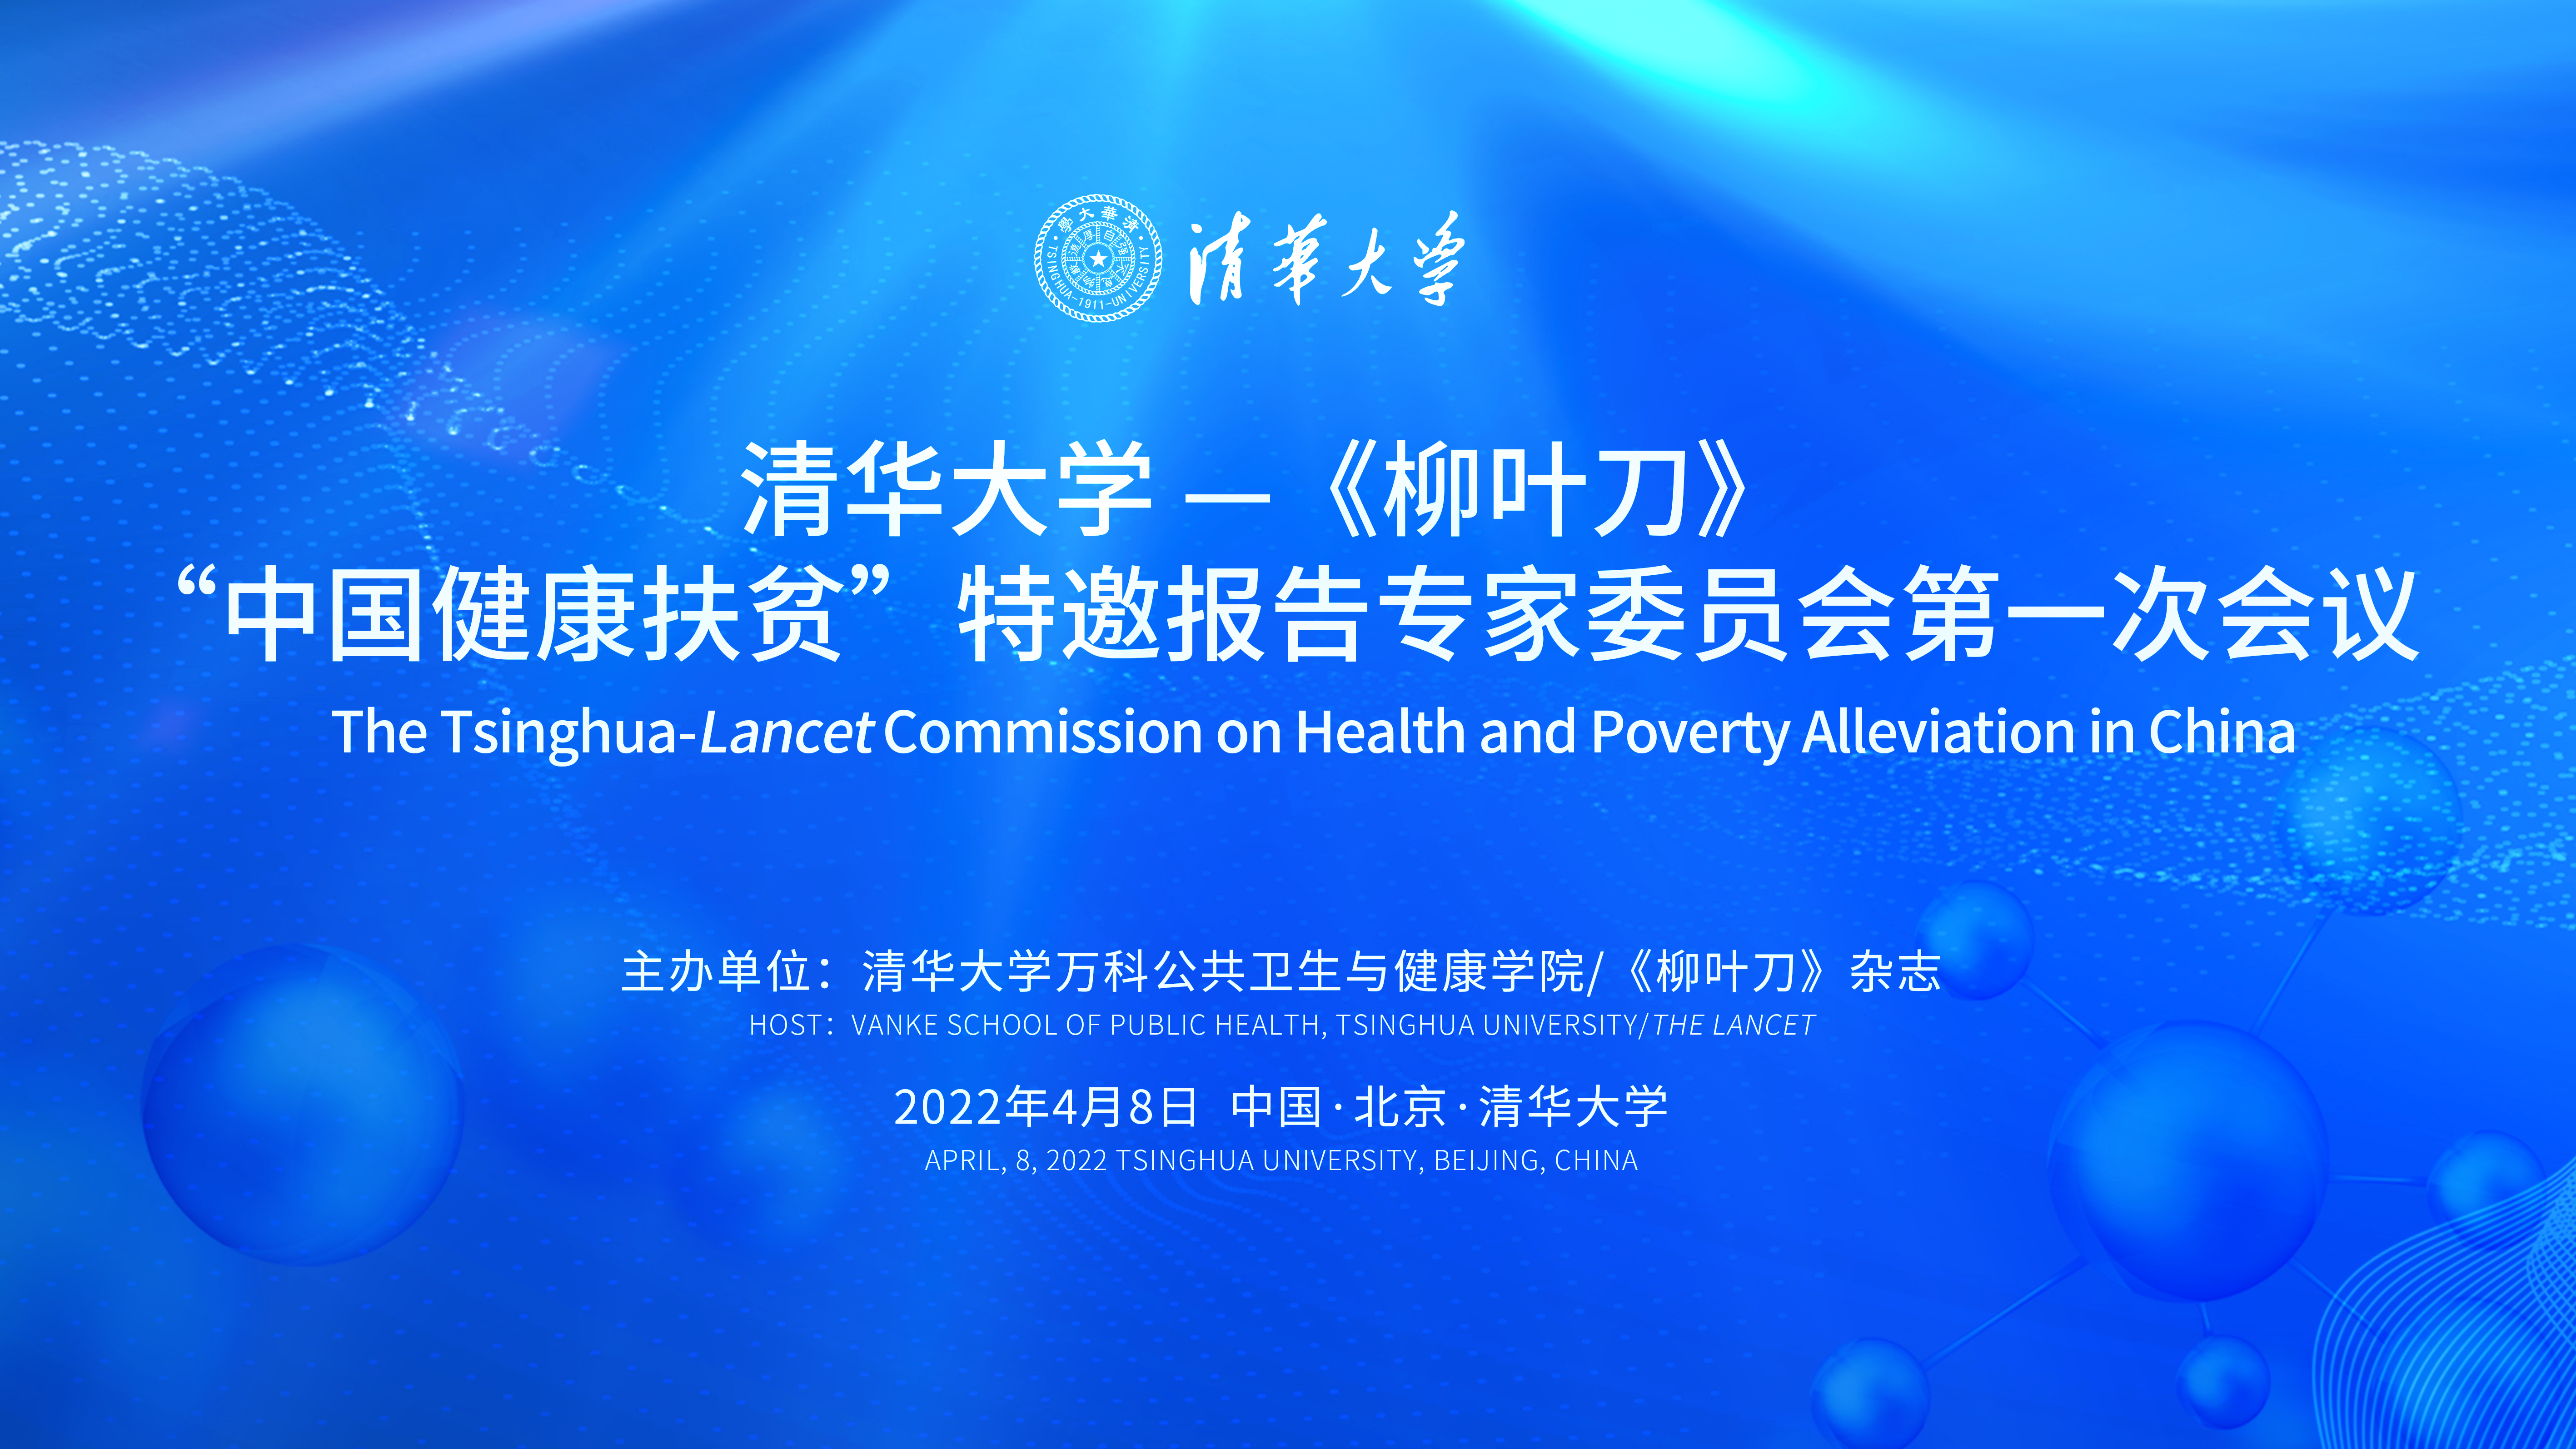 清华大学—《柳叶刀》“中国健康扶贫”特邀报告专家委员会首次会议成功举行